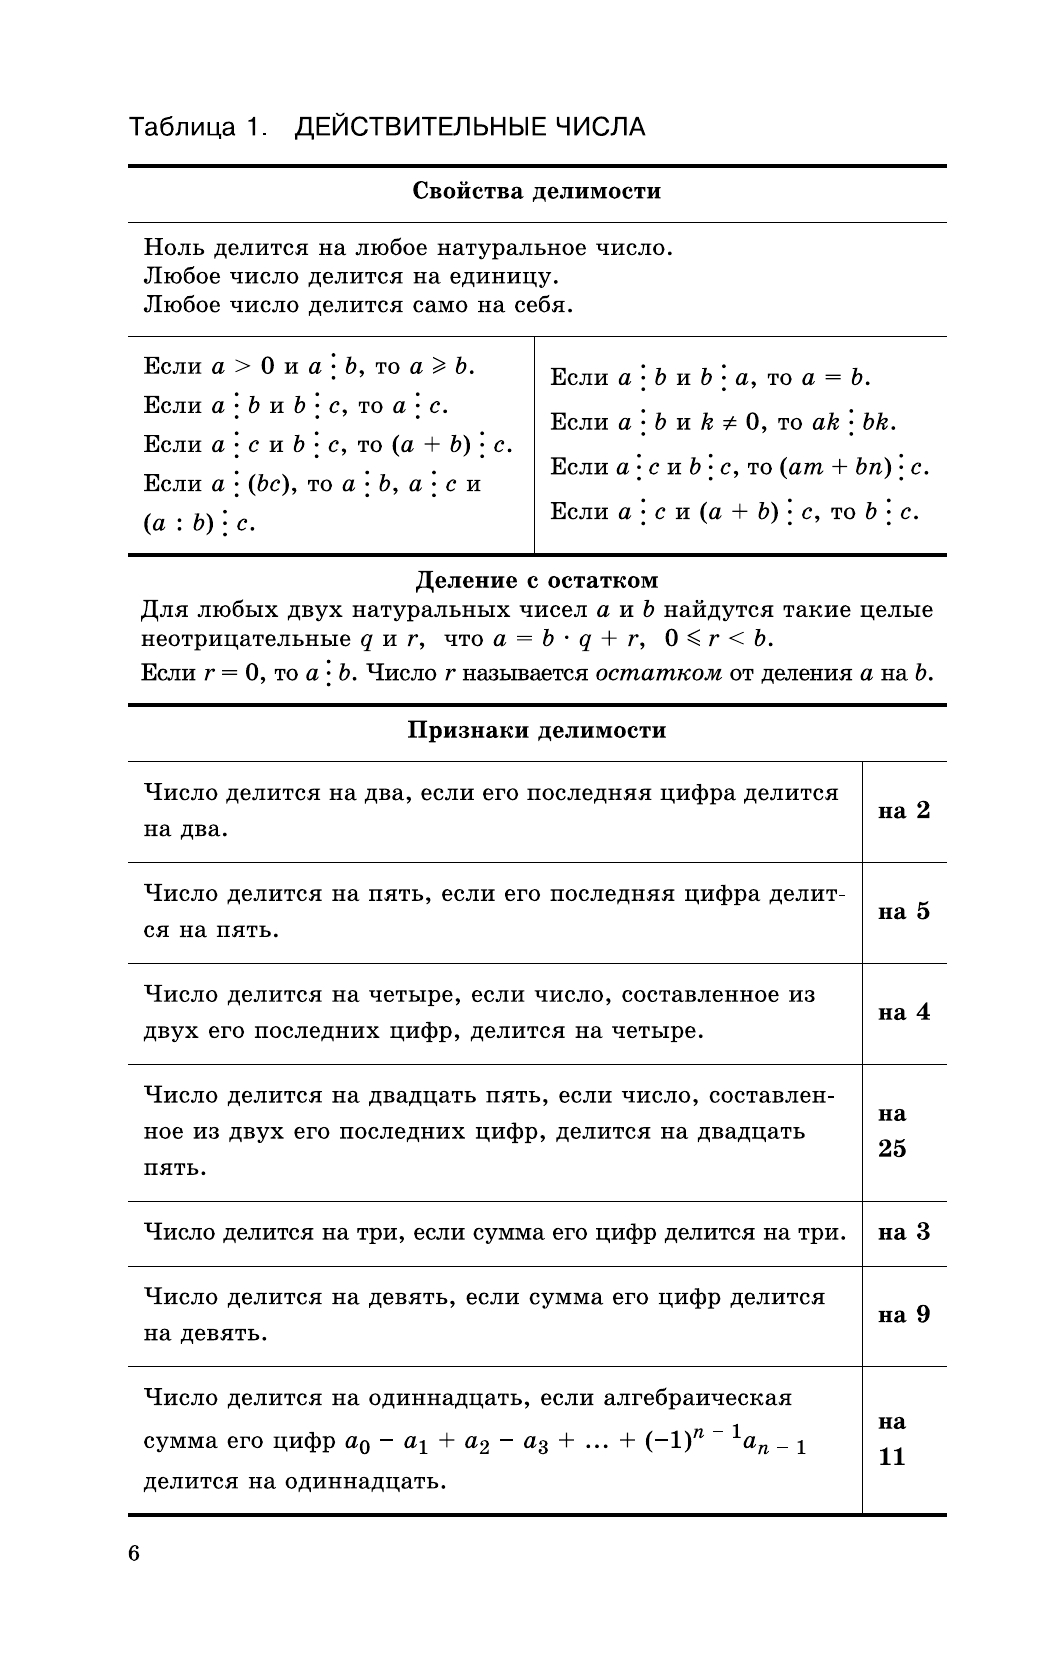 Алгебра в таблицах. 7-11 классы. Справочное пособие (Звавич) 6